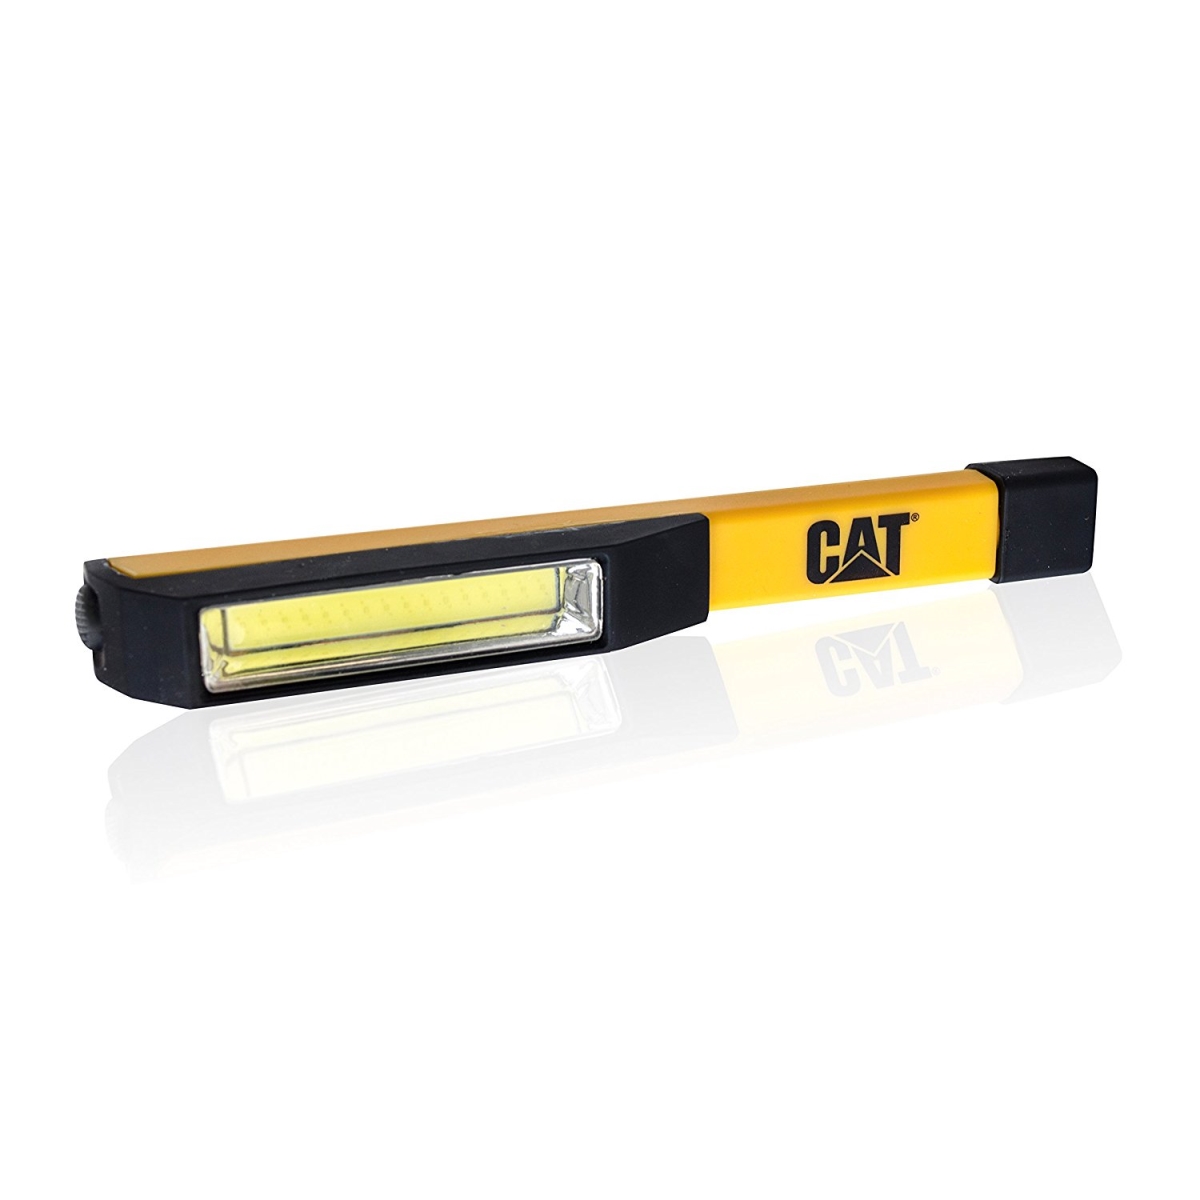 Cat-ct1000 Cob Led Pocket Flashlight With Magnetic Base